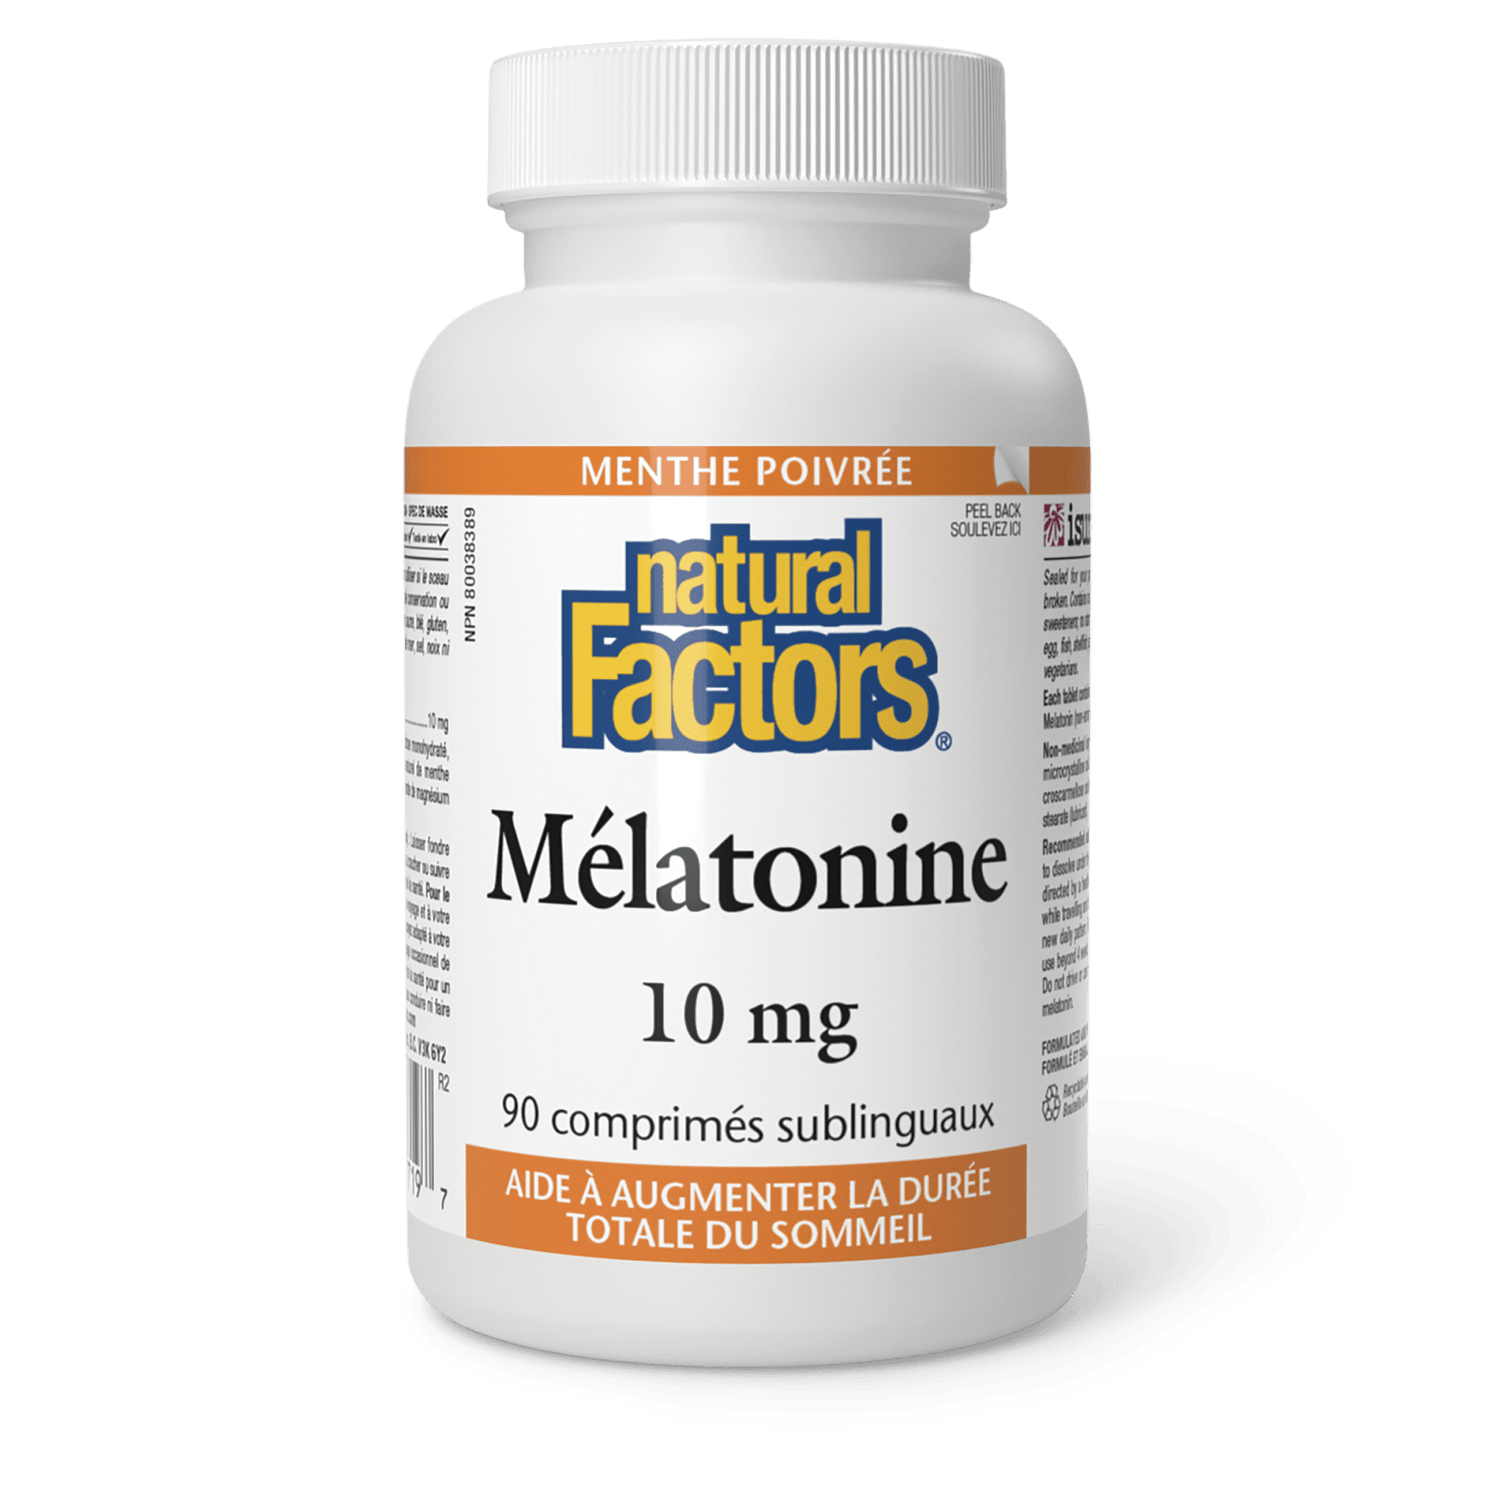 Mélatonine 10 mg, menthe poivrée, Natural Factors|v|image|2719